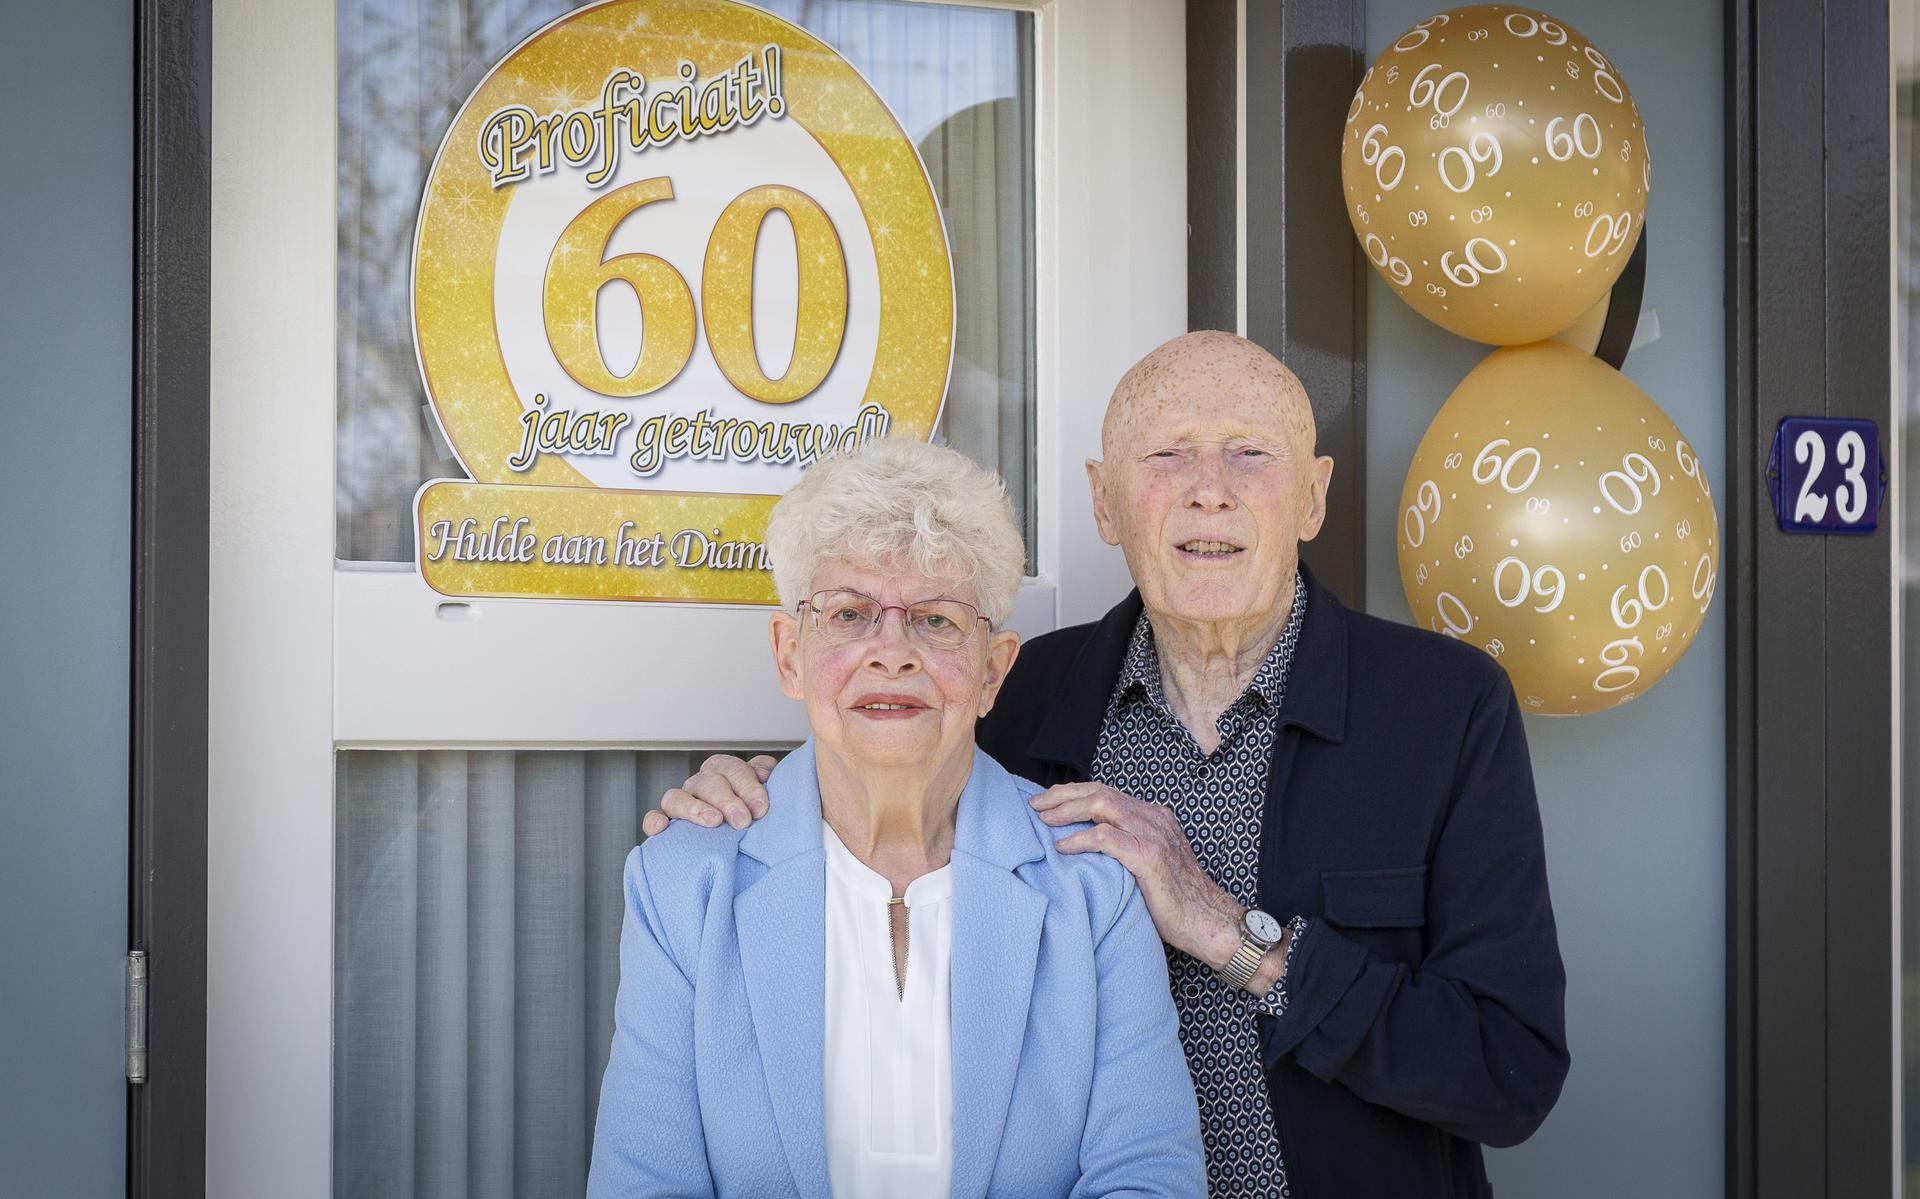 Echtpaar Bork-Kolk, uit Hoogeveen, is zestig jaar getrouwd.